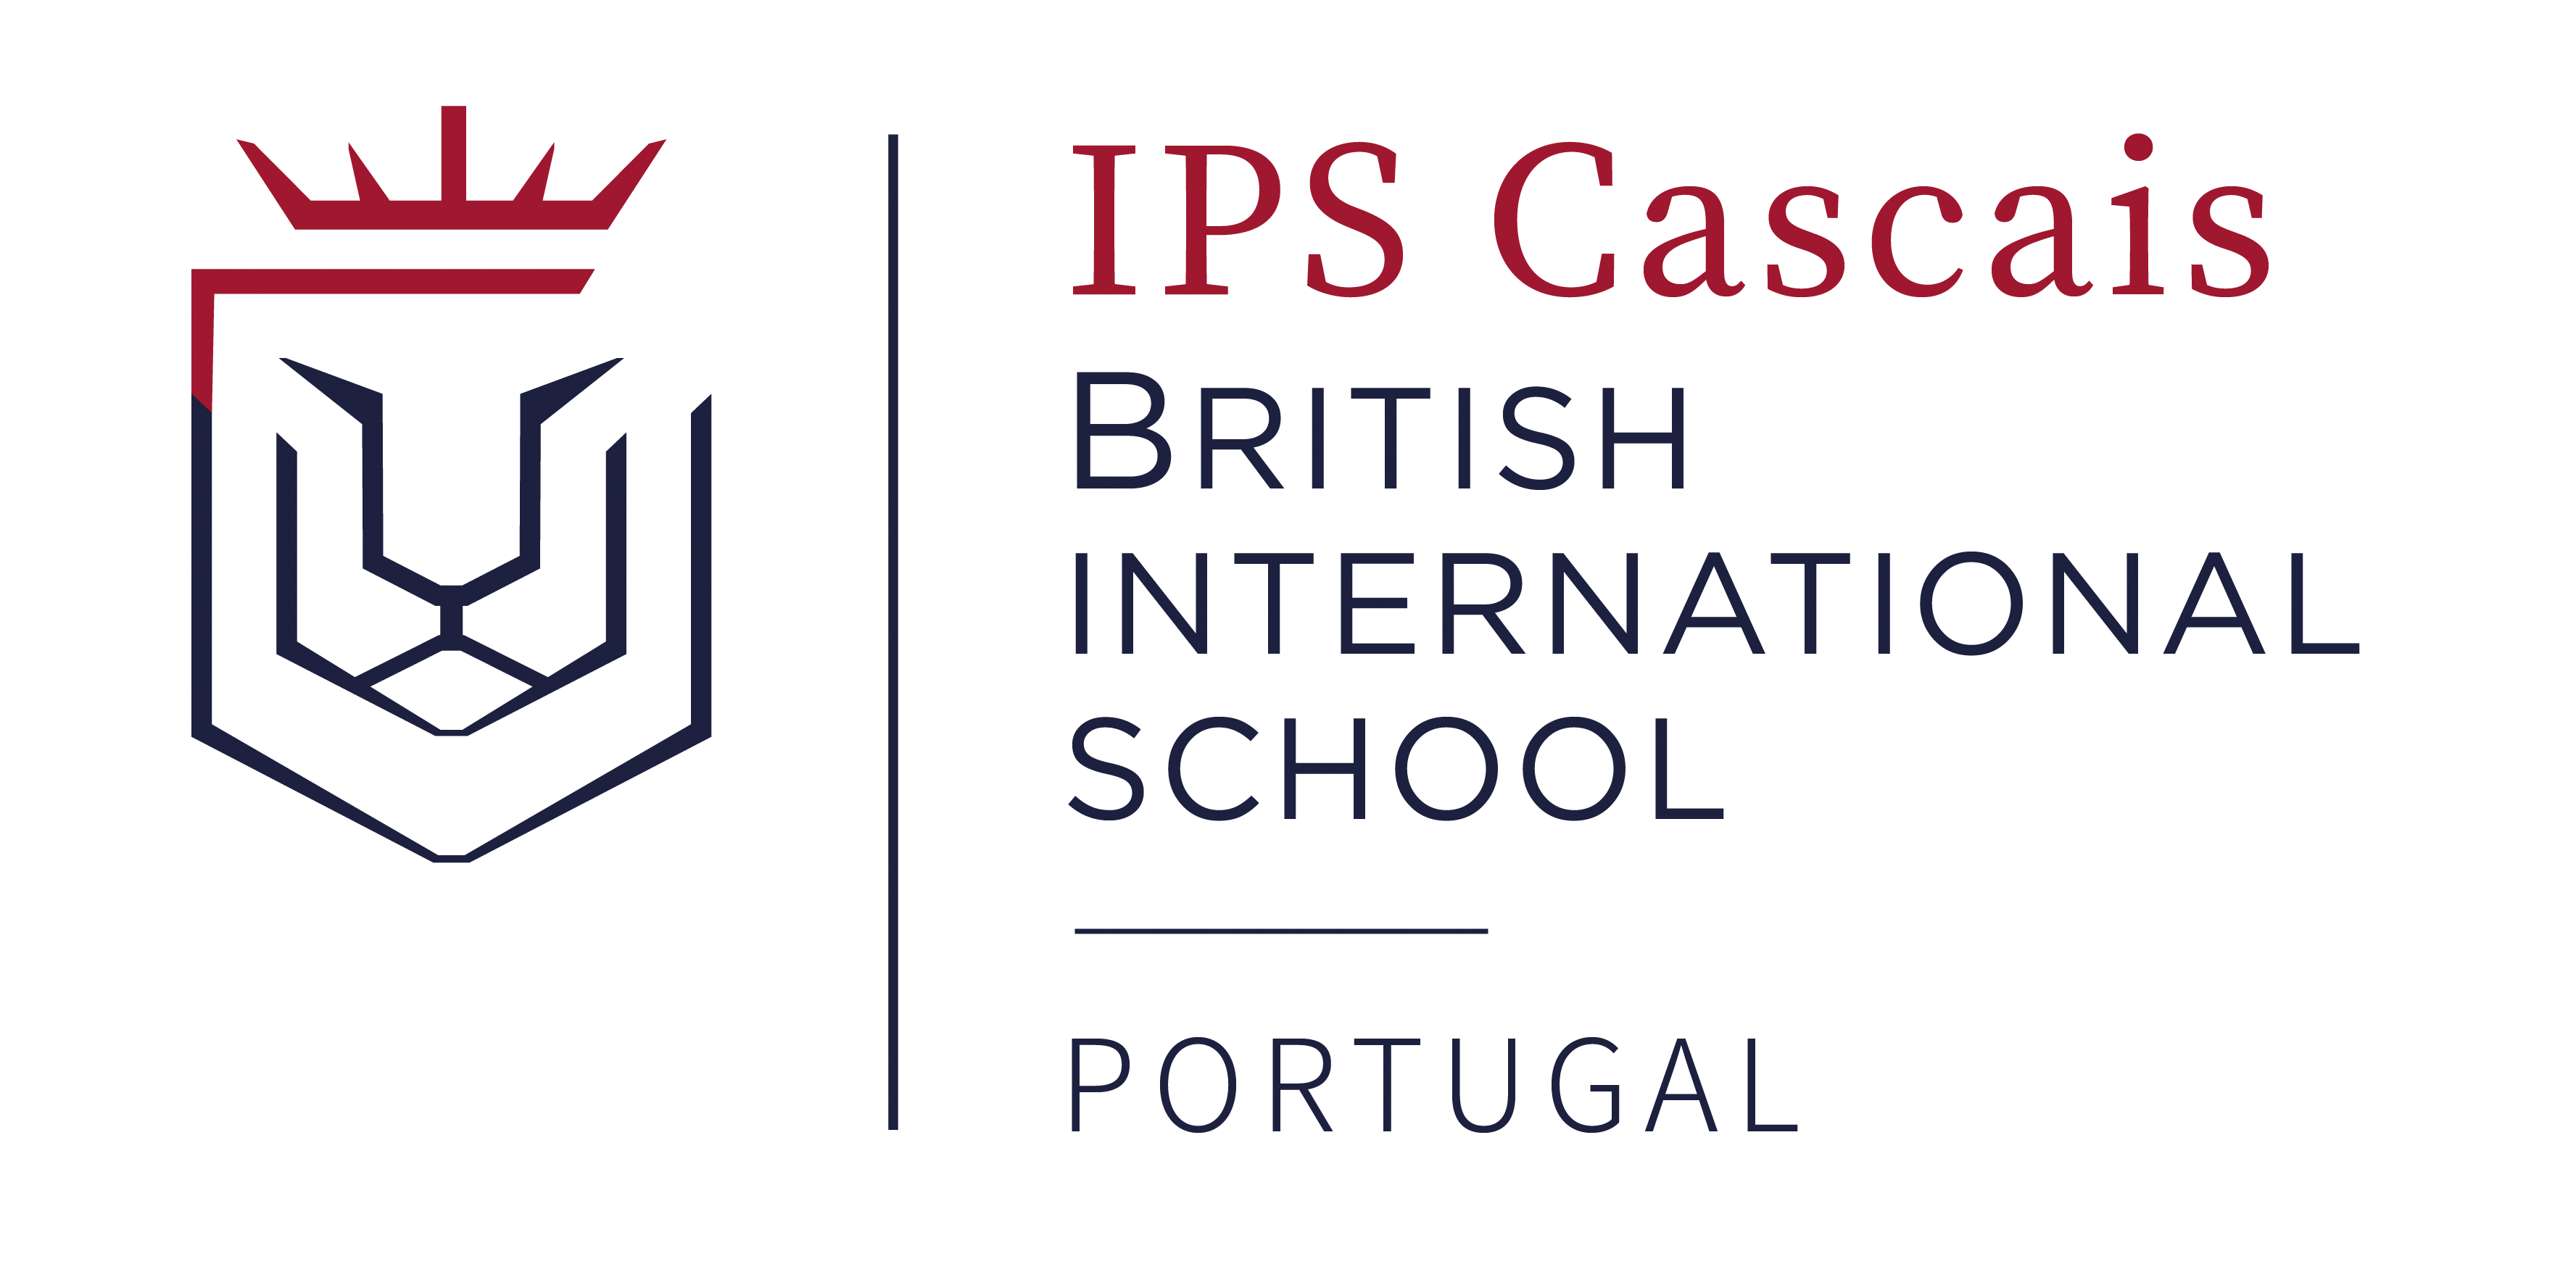 IPS Cascais